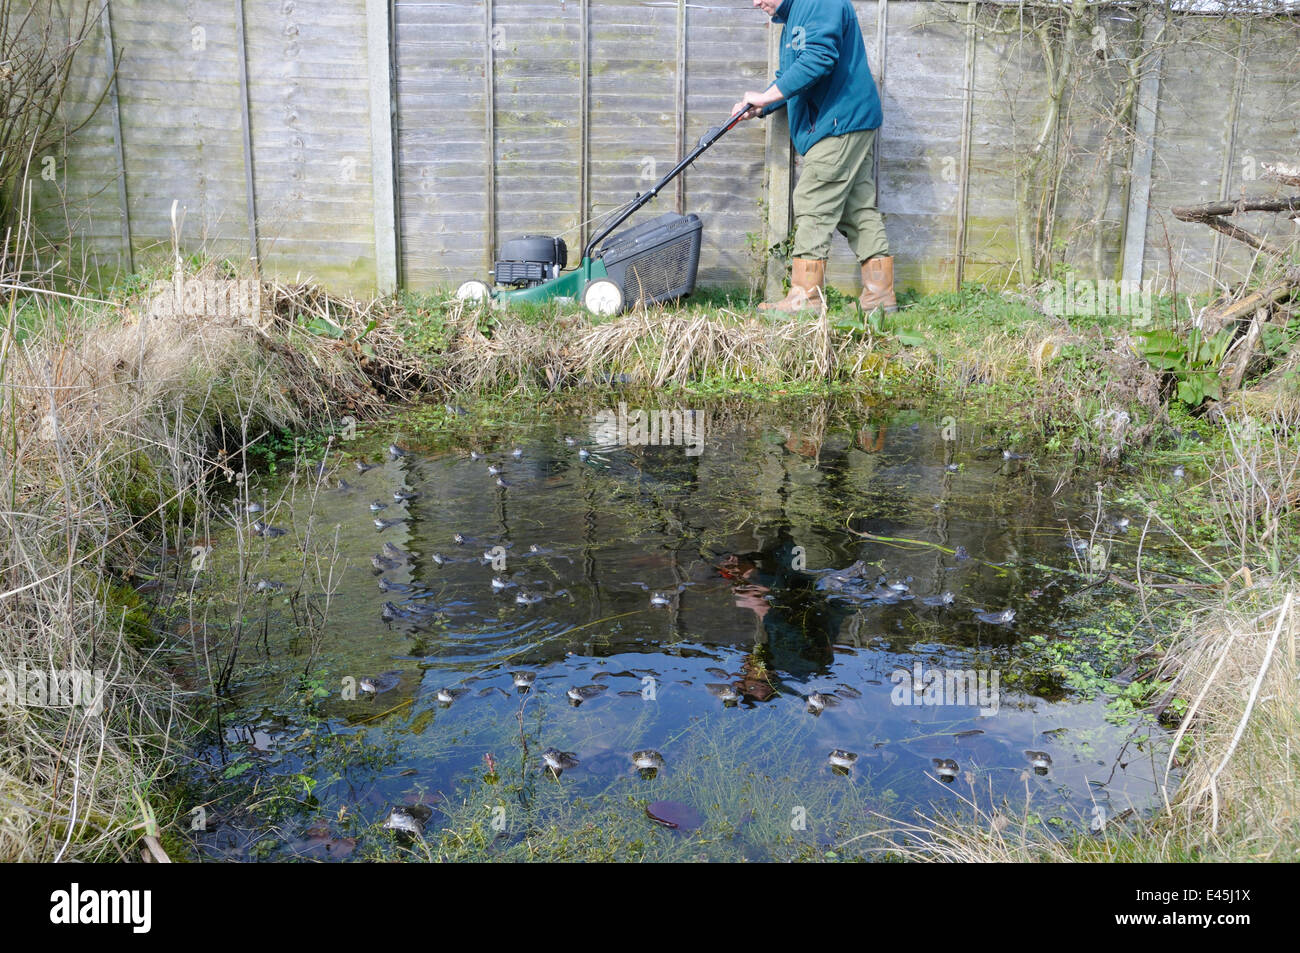 Gärtner Mähen Rand der Gartenteich mit Fröschen Zucht im Vordergrund, Norfolk, UK, März. -Modell veröffentlicht. Stockfoto